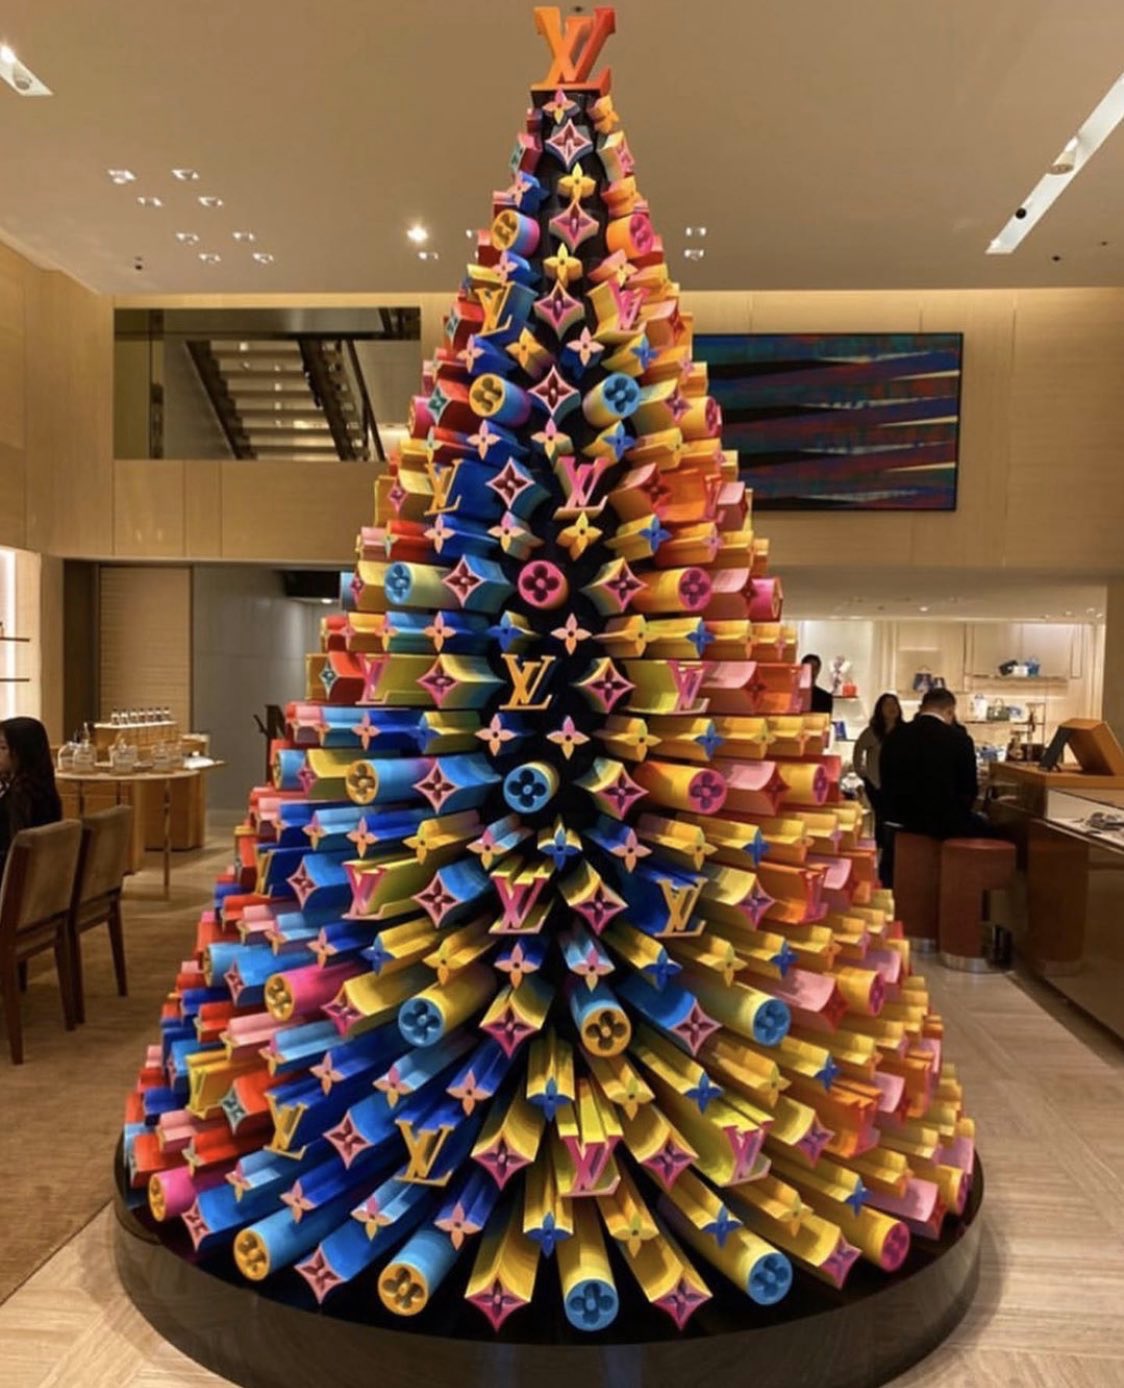 La maison Louis Vuitton irradie pour Noël